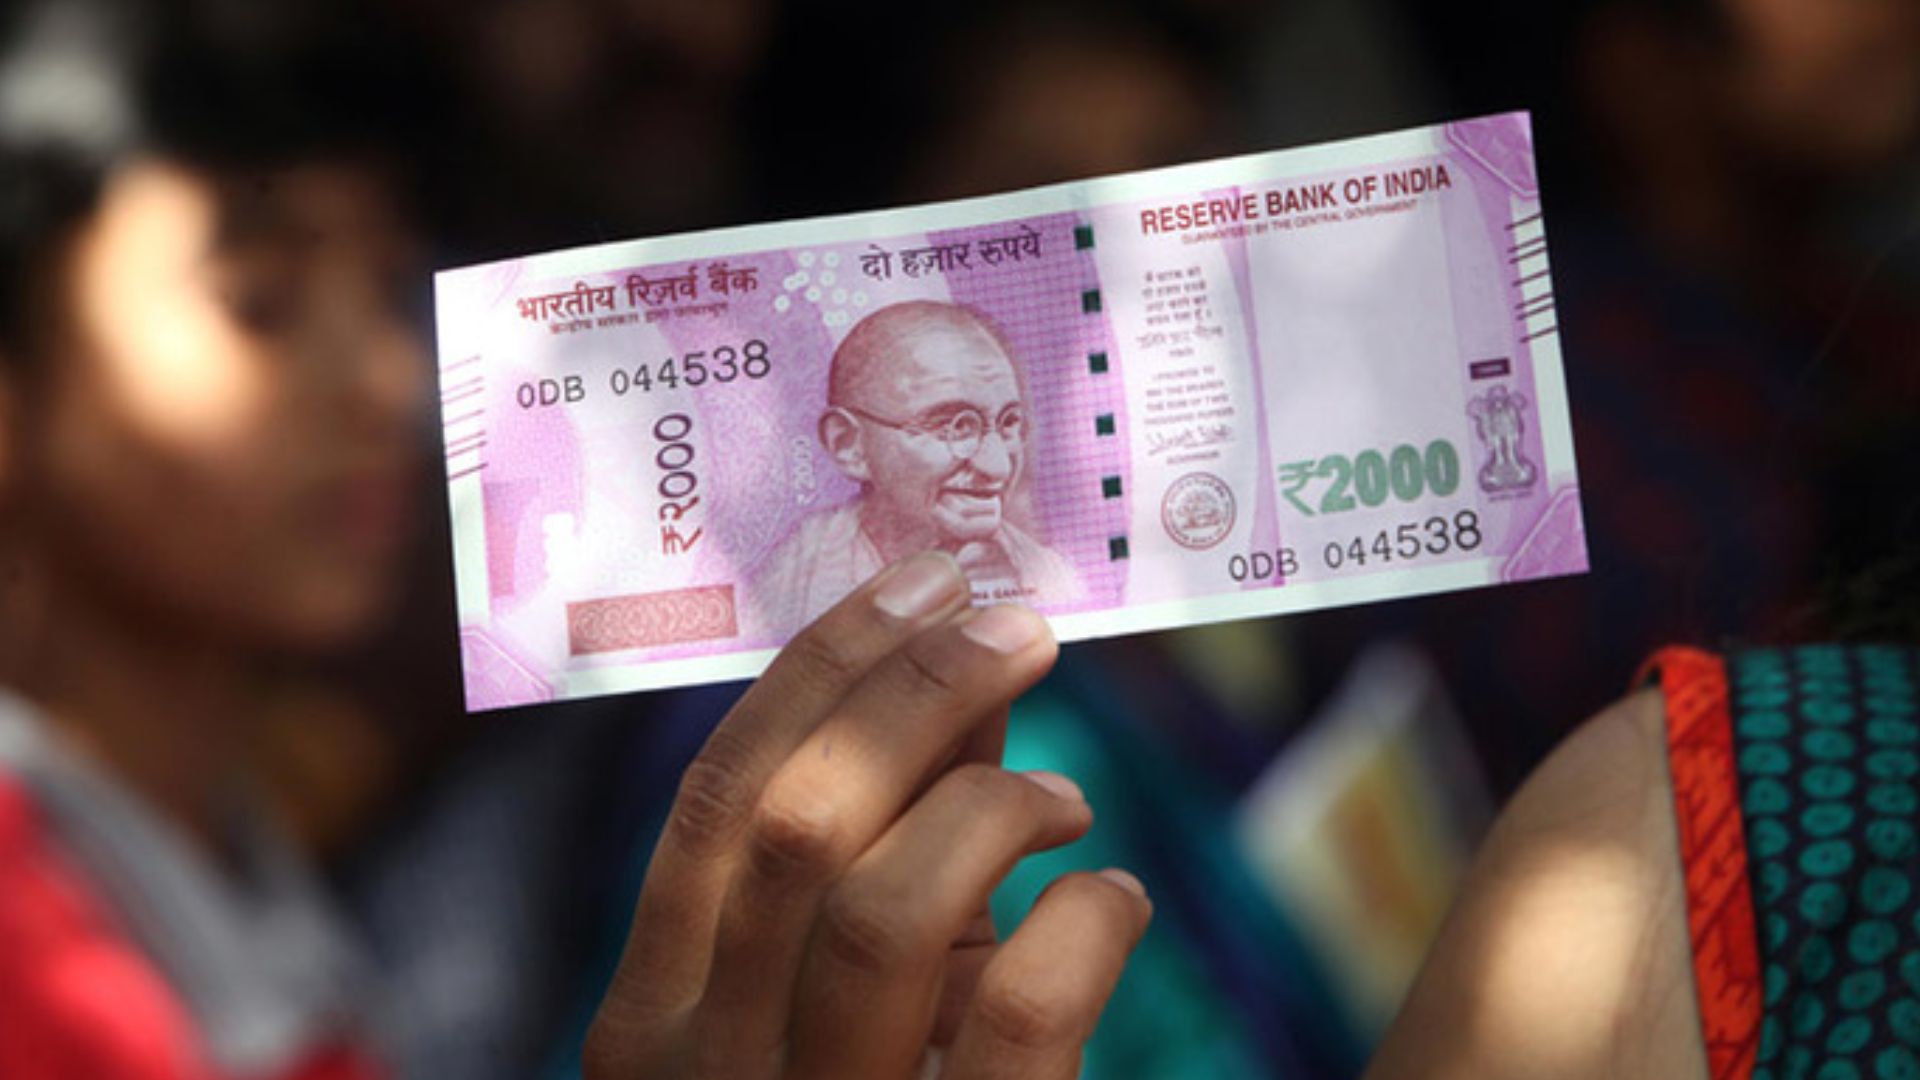 बदलने हैं 2000 रुपये के नोट? निश्चिंत रहें... नहीं पड़ेगी किसी फॉर्म-पहचान पत्र की जरूरत